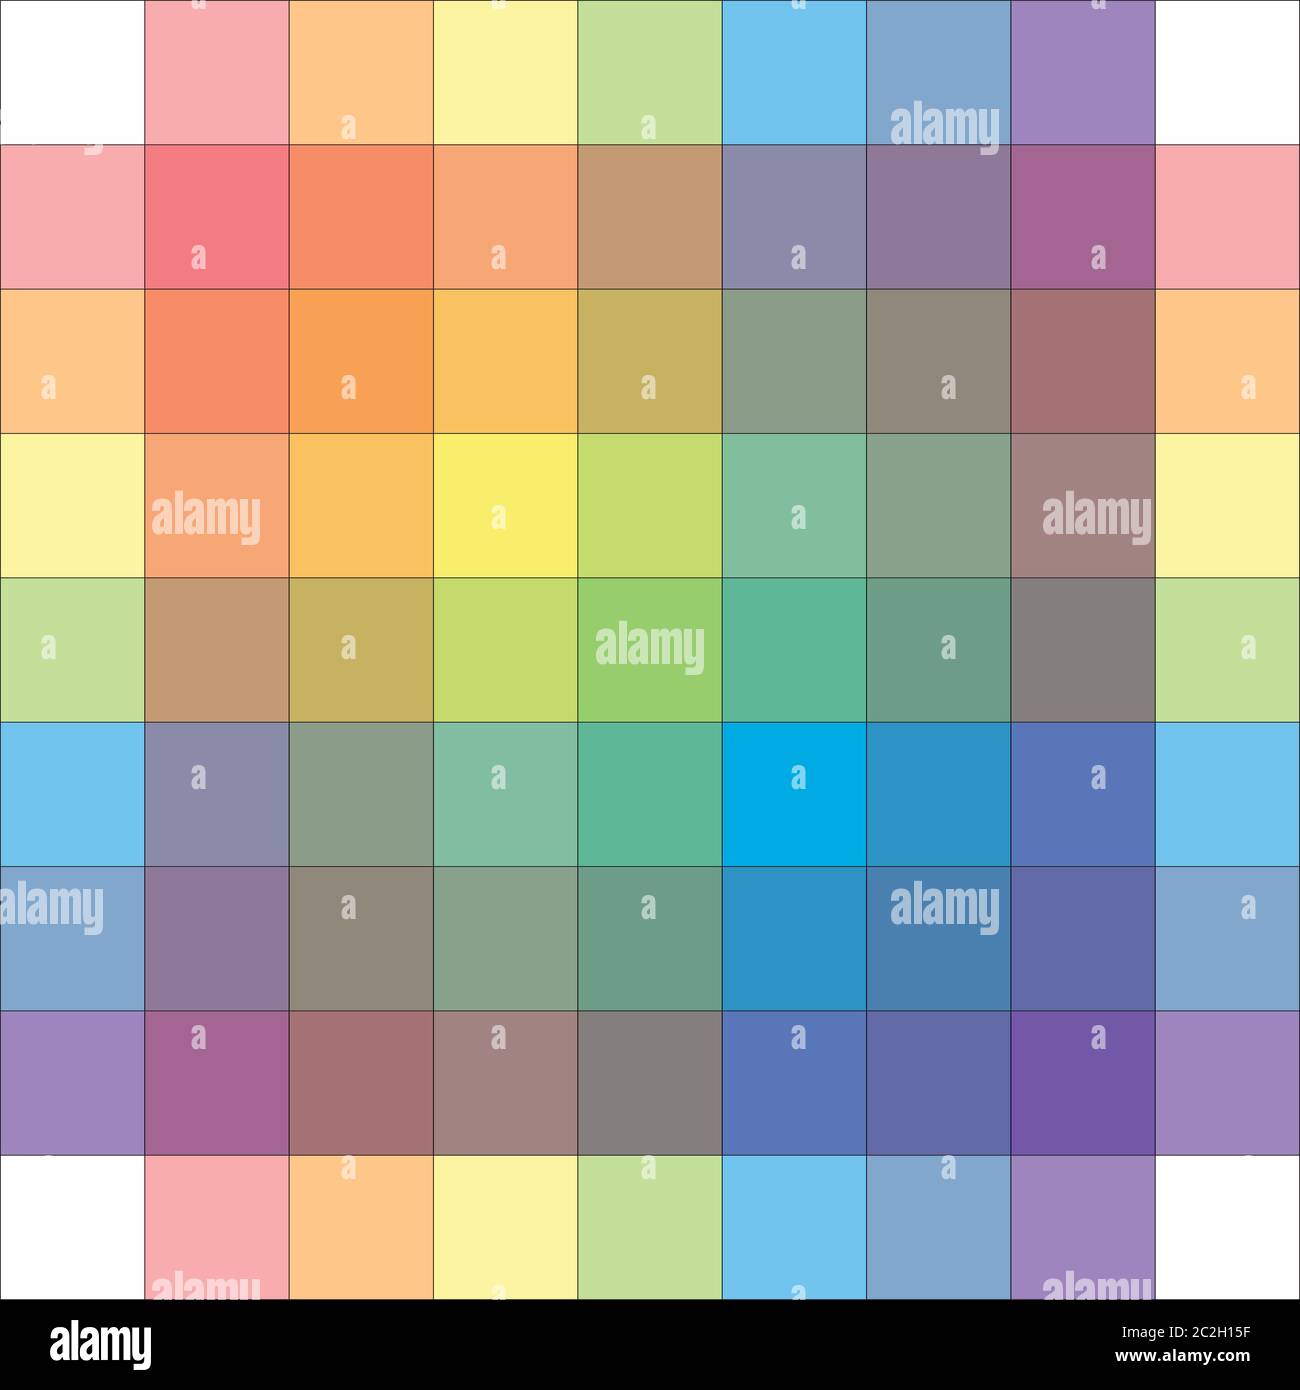 Polychrome multicolore Spectral Versicolor Rainbow Grid de 9x9 segments. Palette colorée d'harmoniques spectrales de lumière aquarelle de TH Banque D'Images